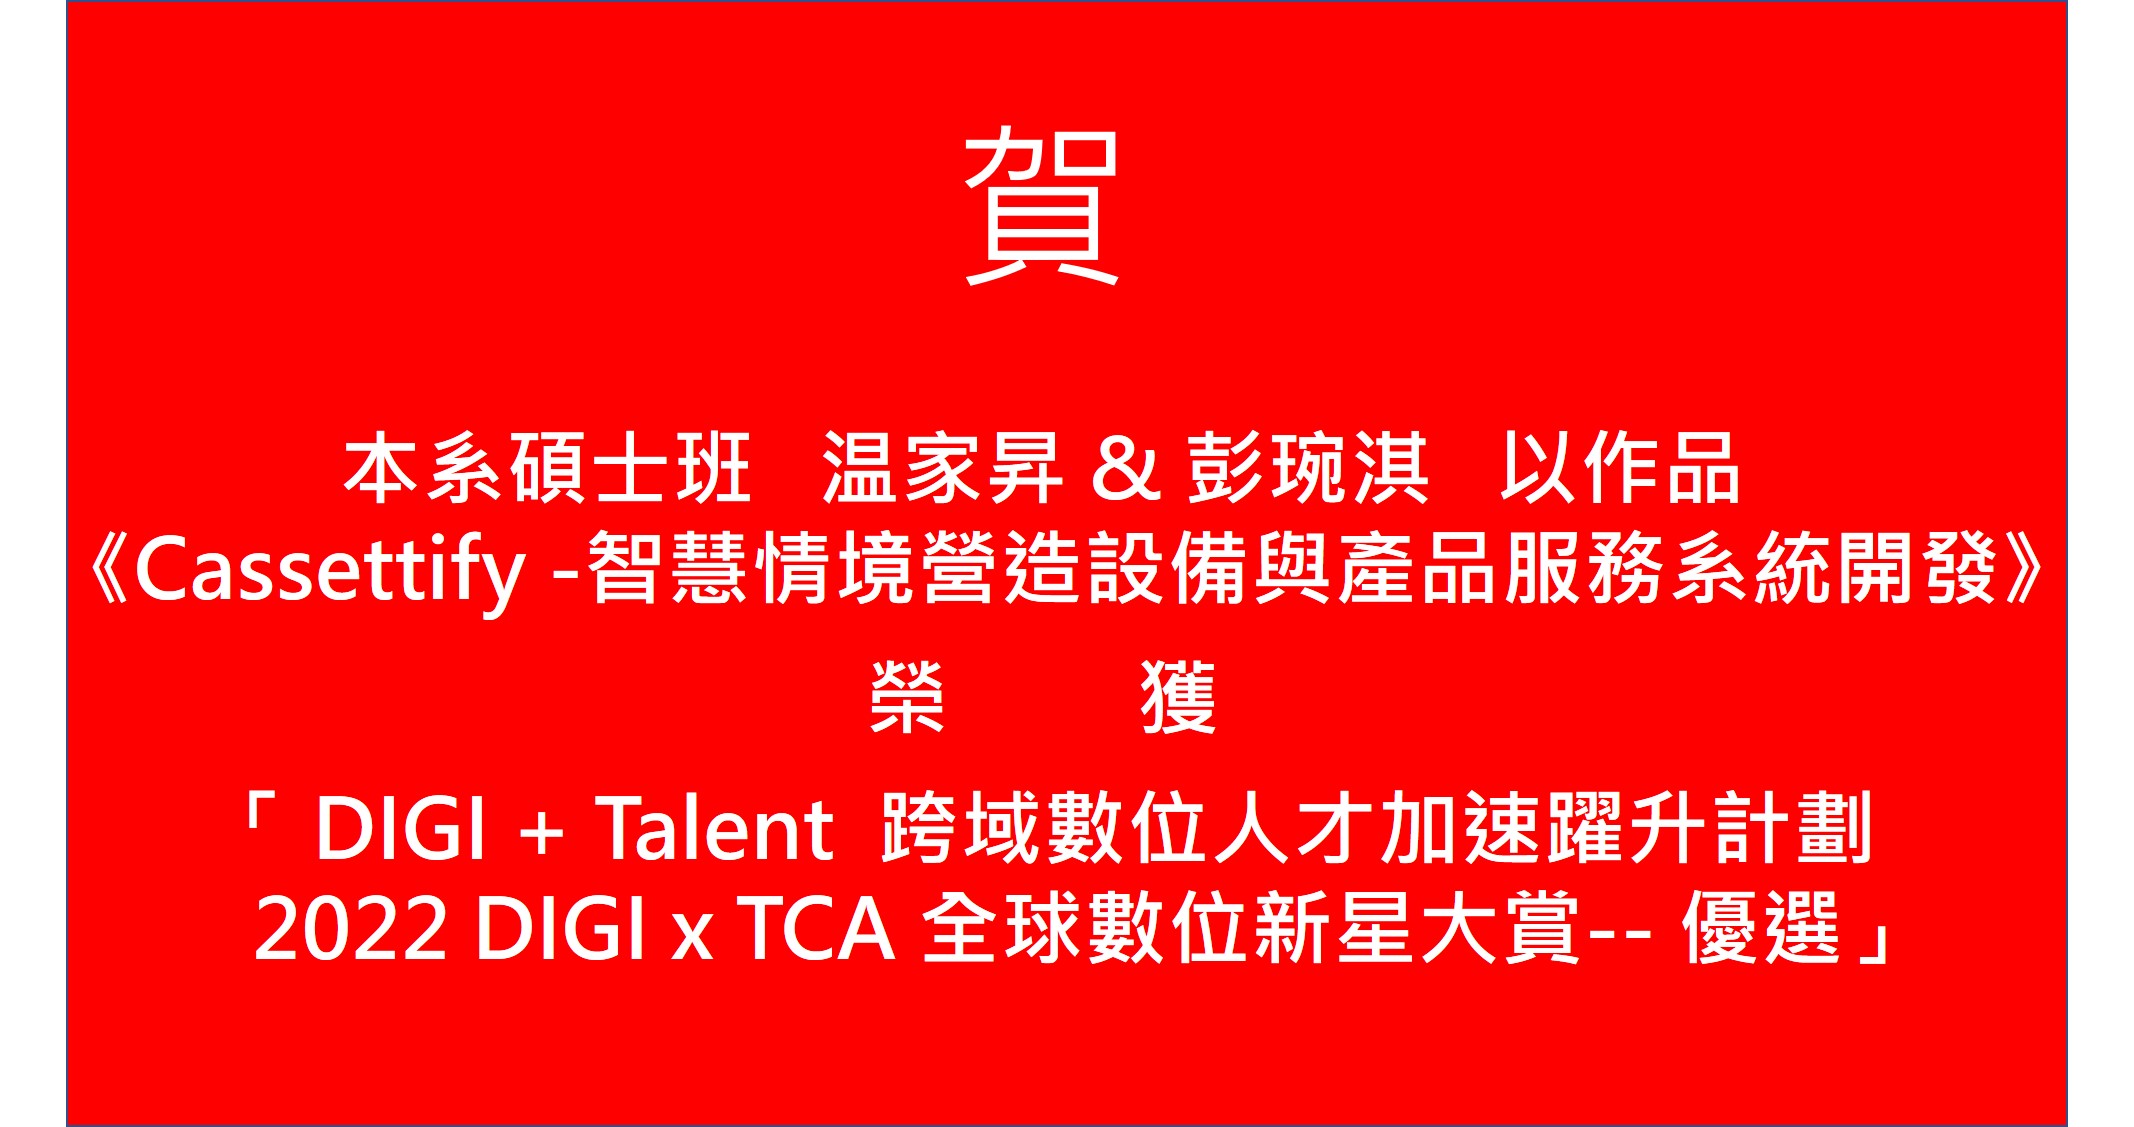 温家昇&彭琬淇榮獲DIGI+Talent跨域數位人才加速躍升計劃 〈2022 DIGI x TCA 全球數位新星大賞 優選〉(另開新視窗)